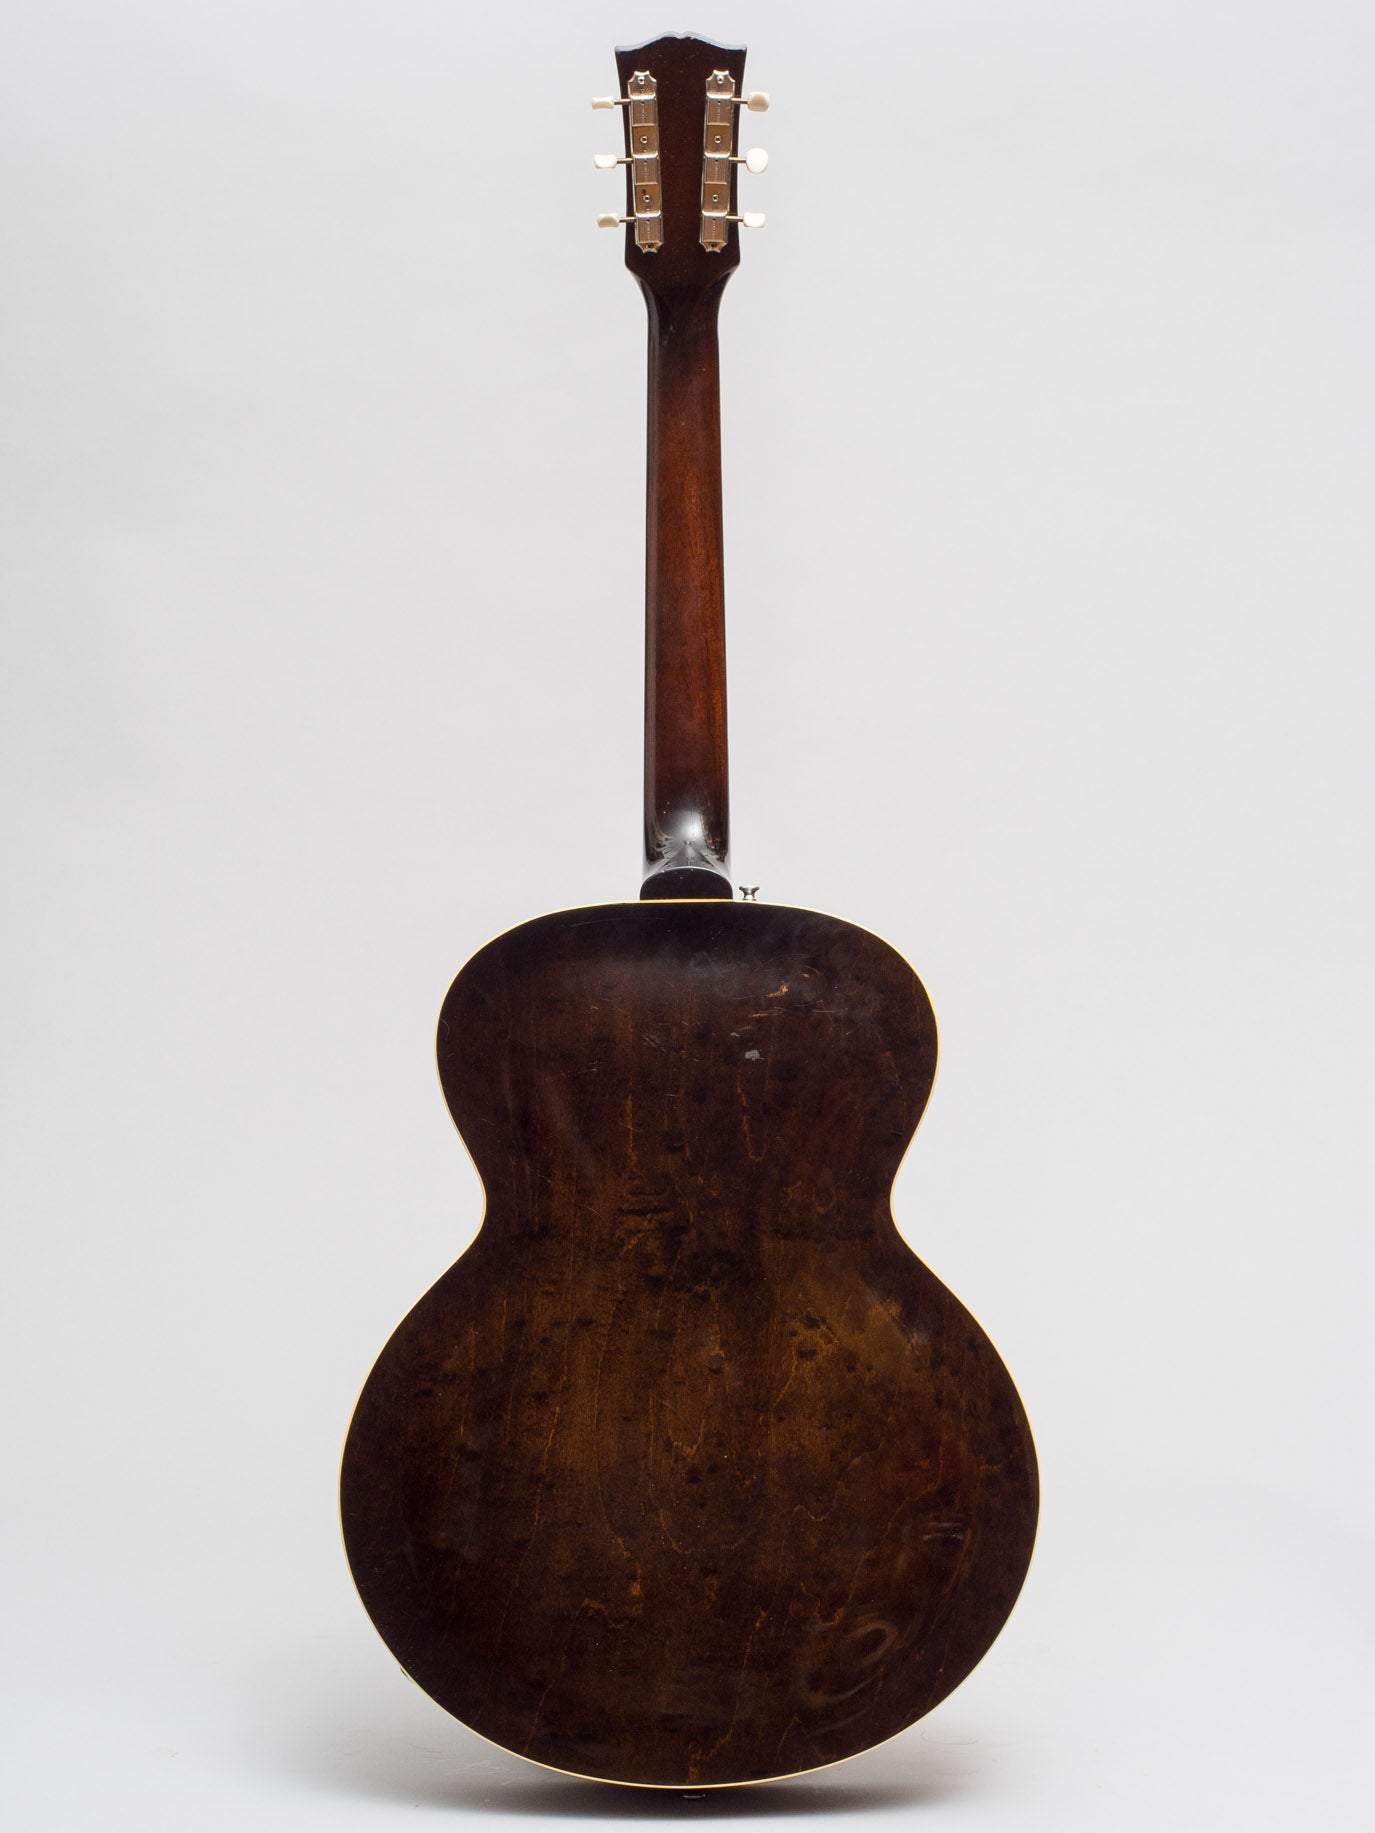 1964 Gibson ES-125